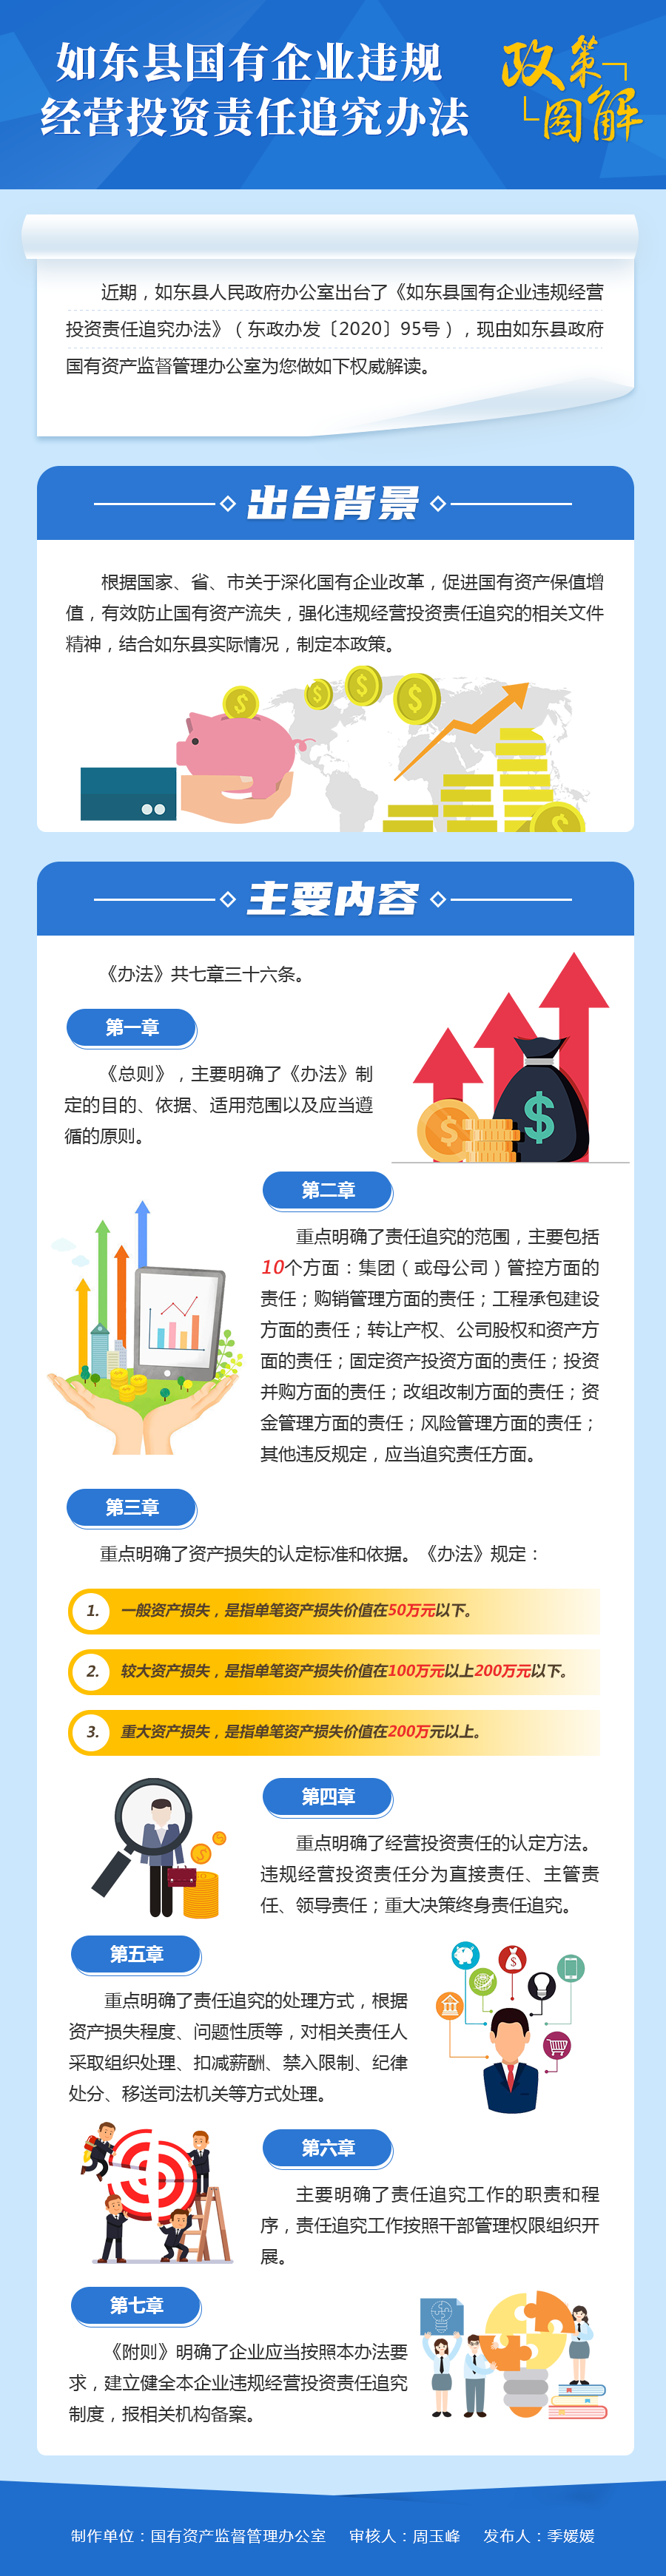 如东县国有企业违规经营投资责任追究办法.png